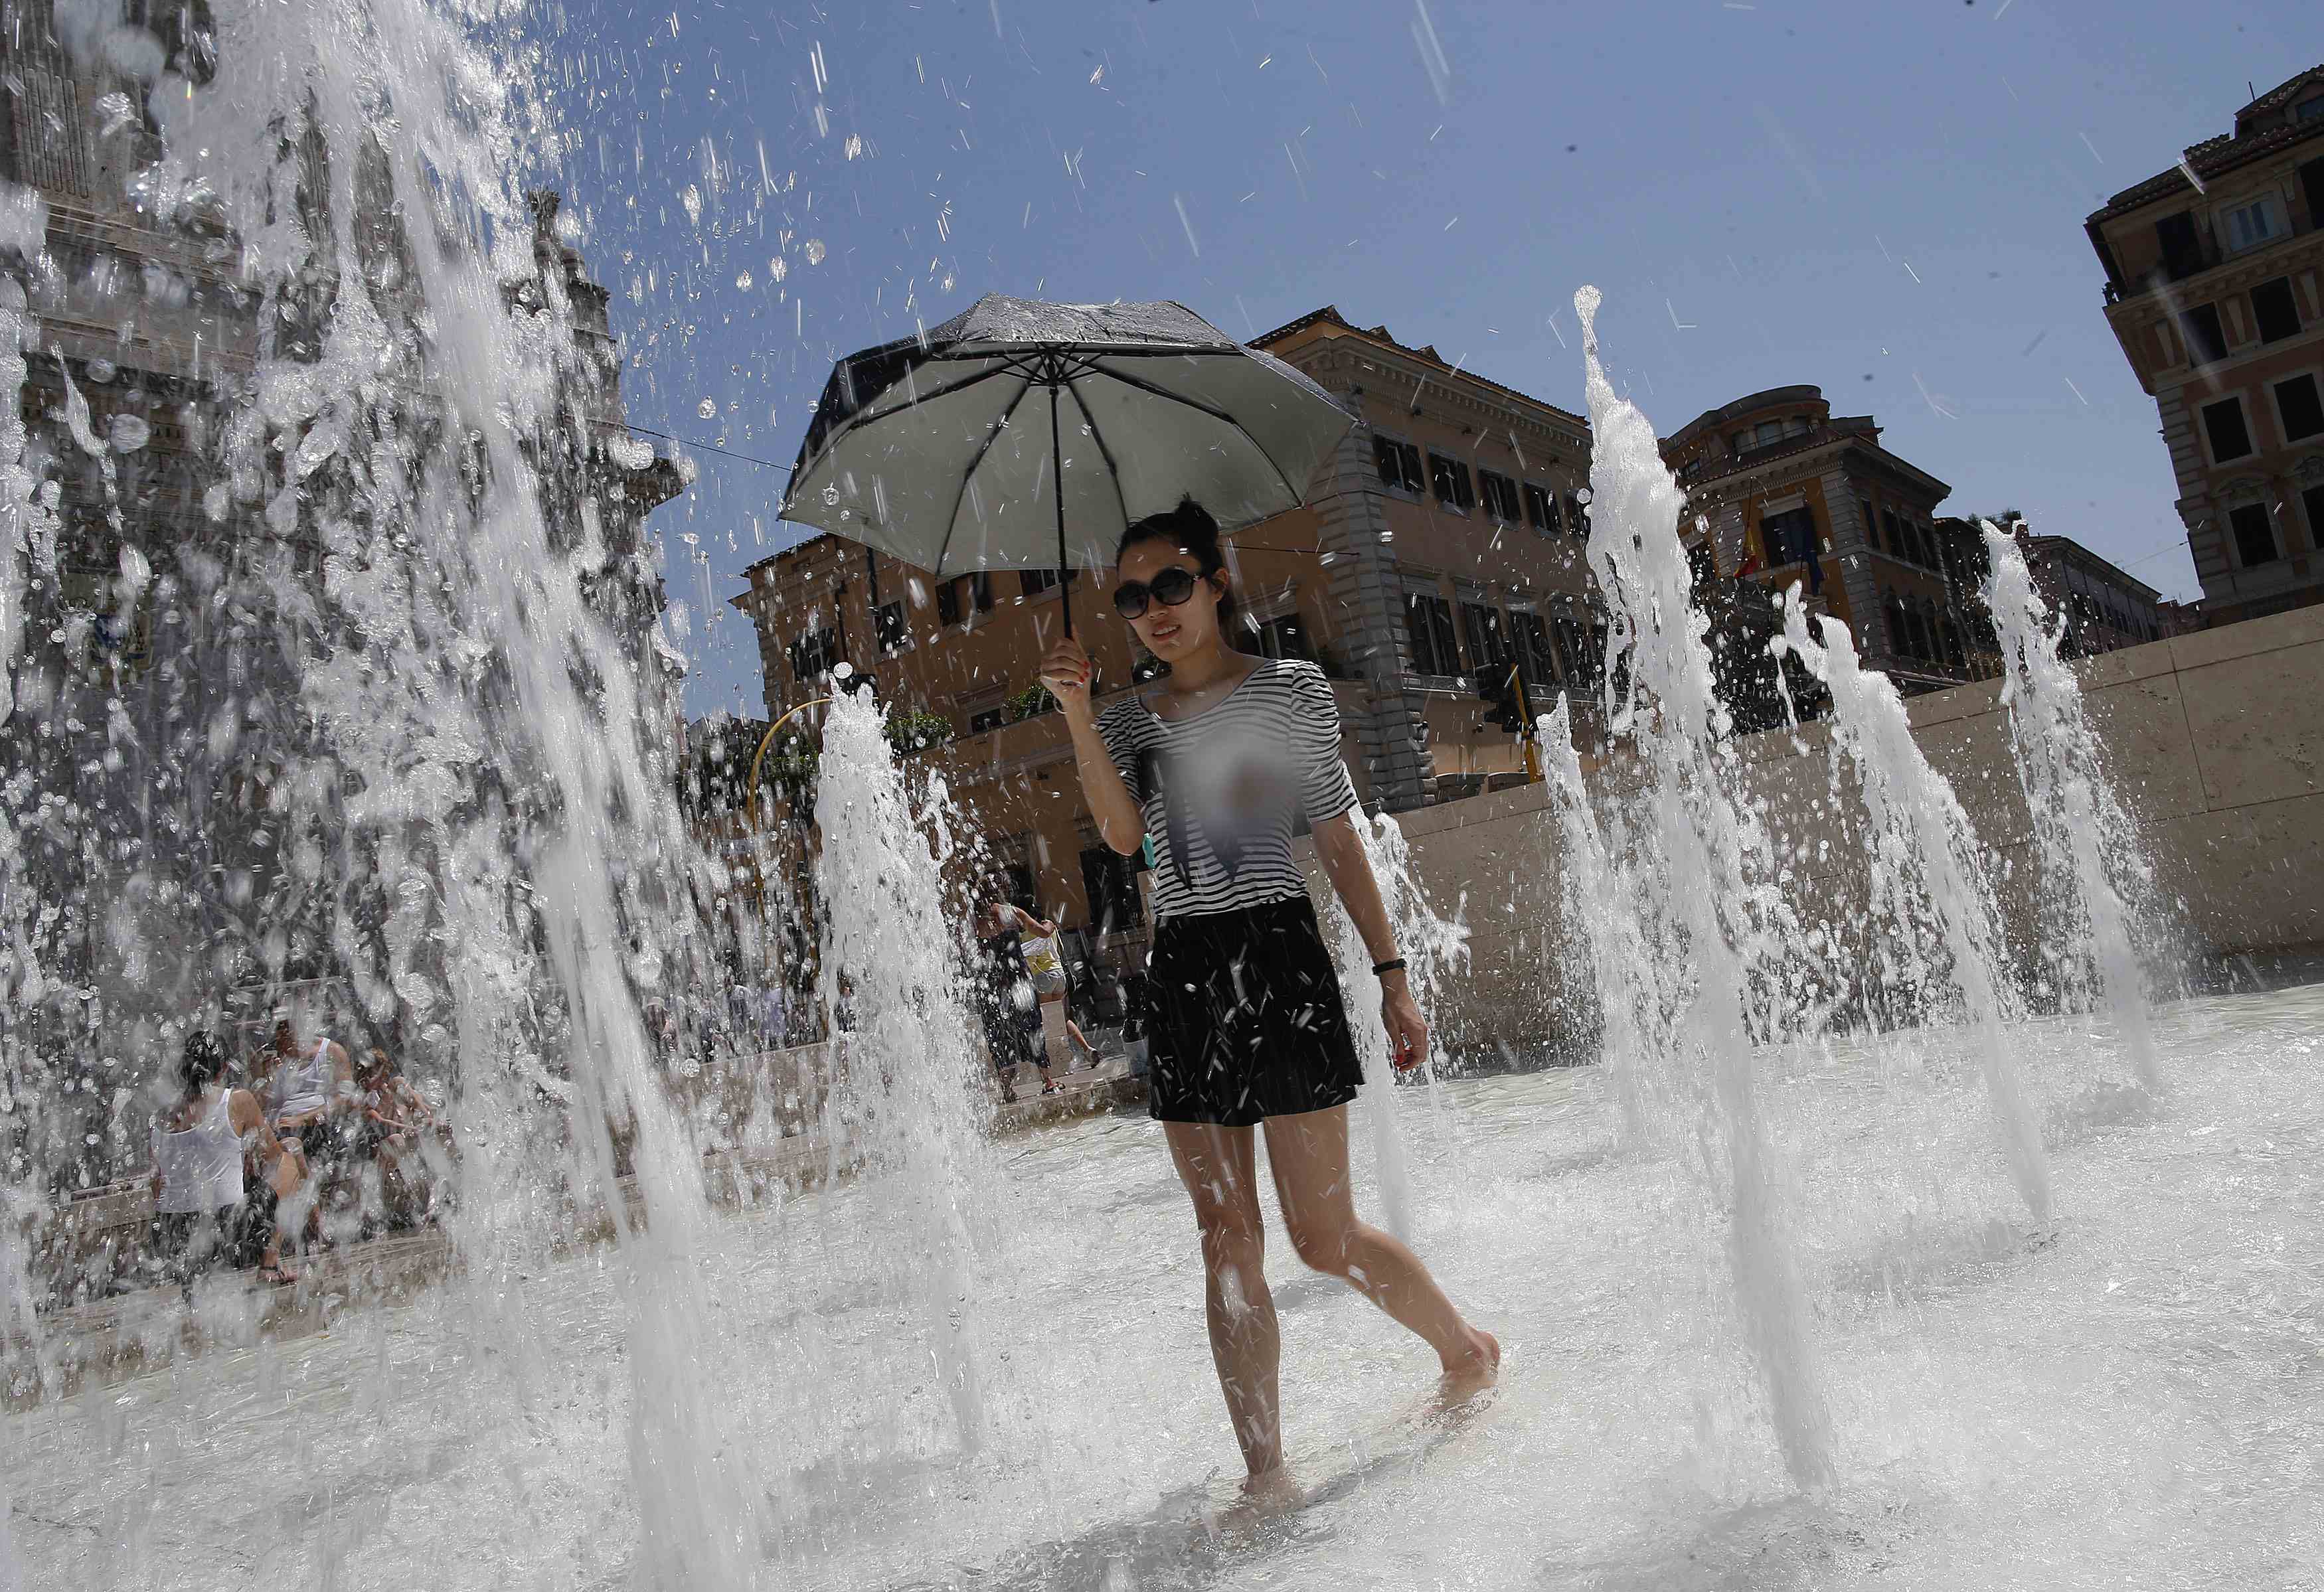 Πρόβλημα λειψυδρίας, λόγω ζέστης, αντιμετωπίζει η Ιταλία